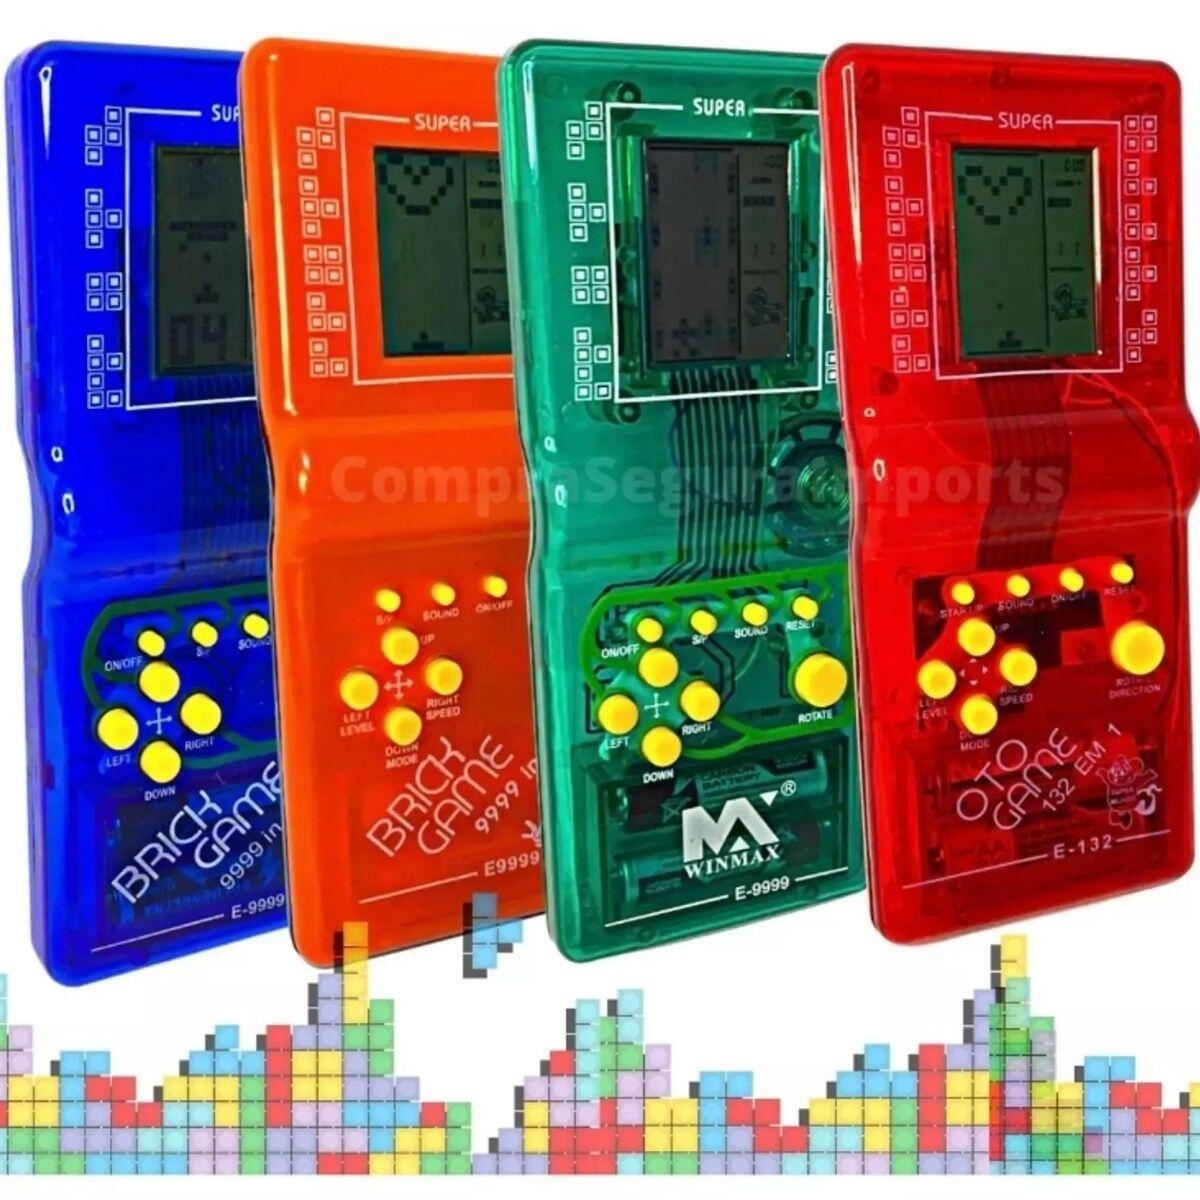 Mini Game Portátil Retrô Clássico 9999 em 1 Brick Game